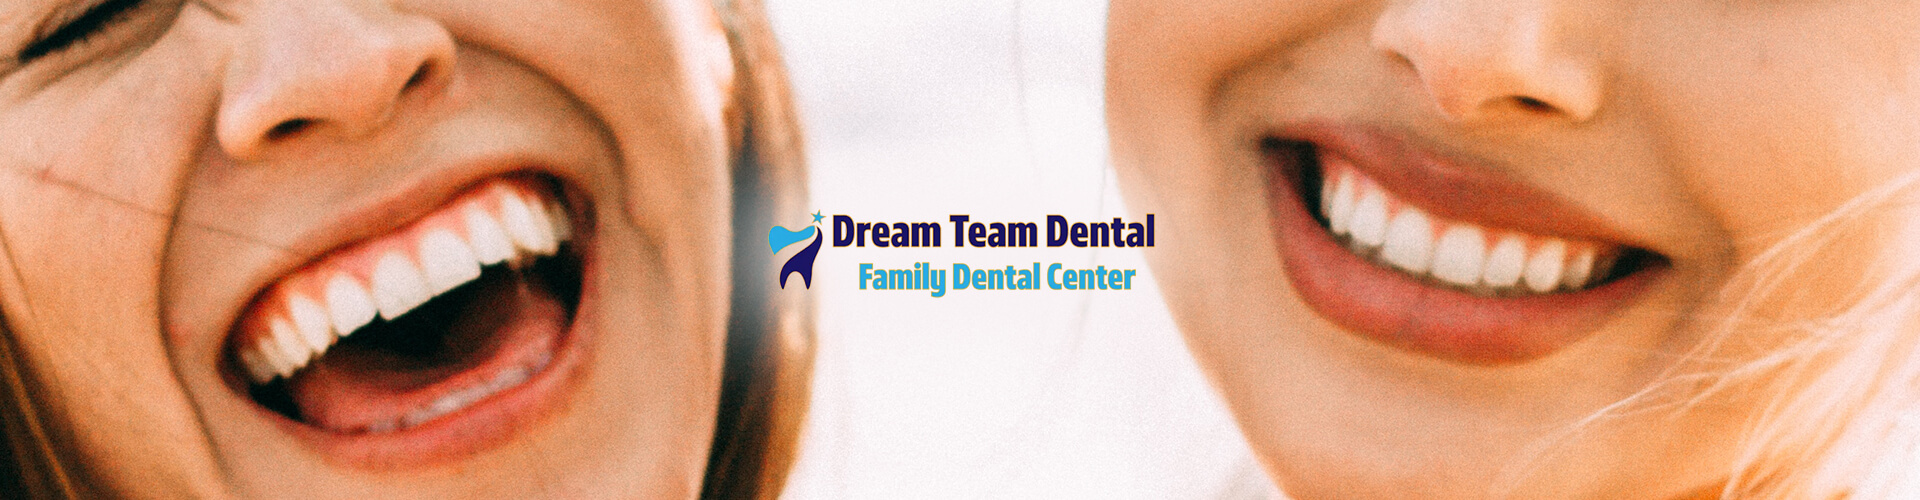 Dream Team Dental banner